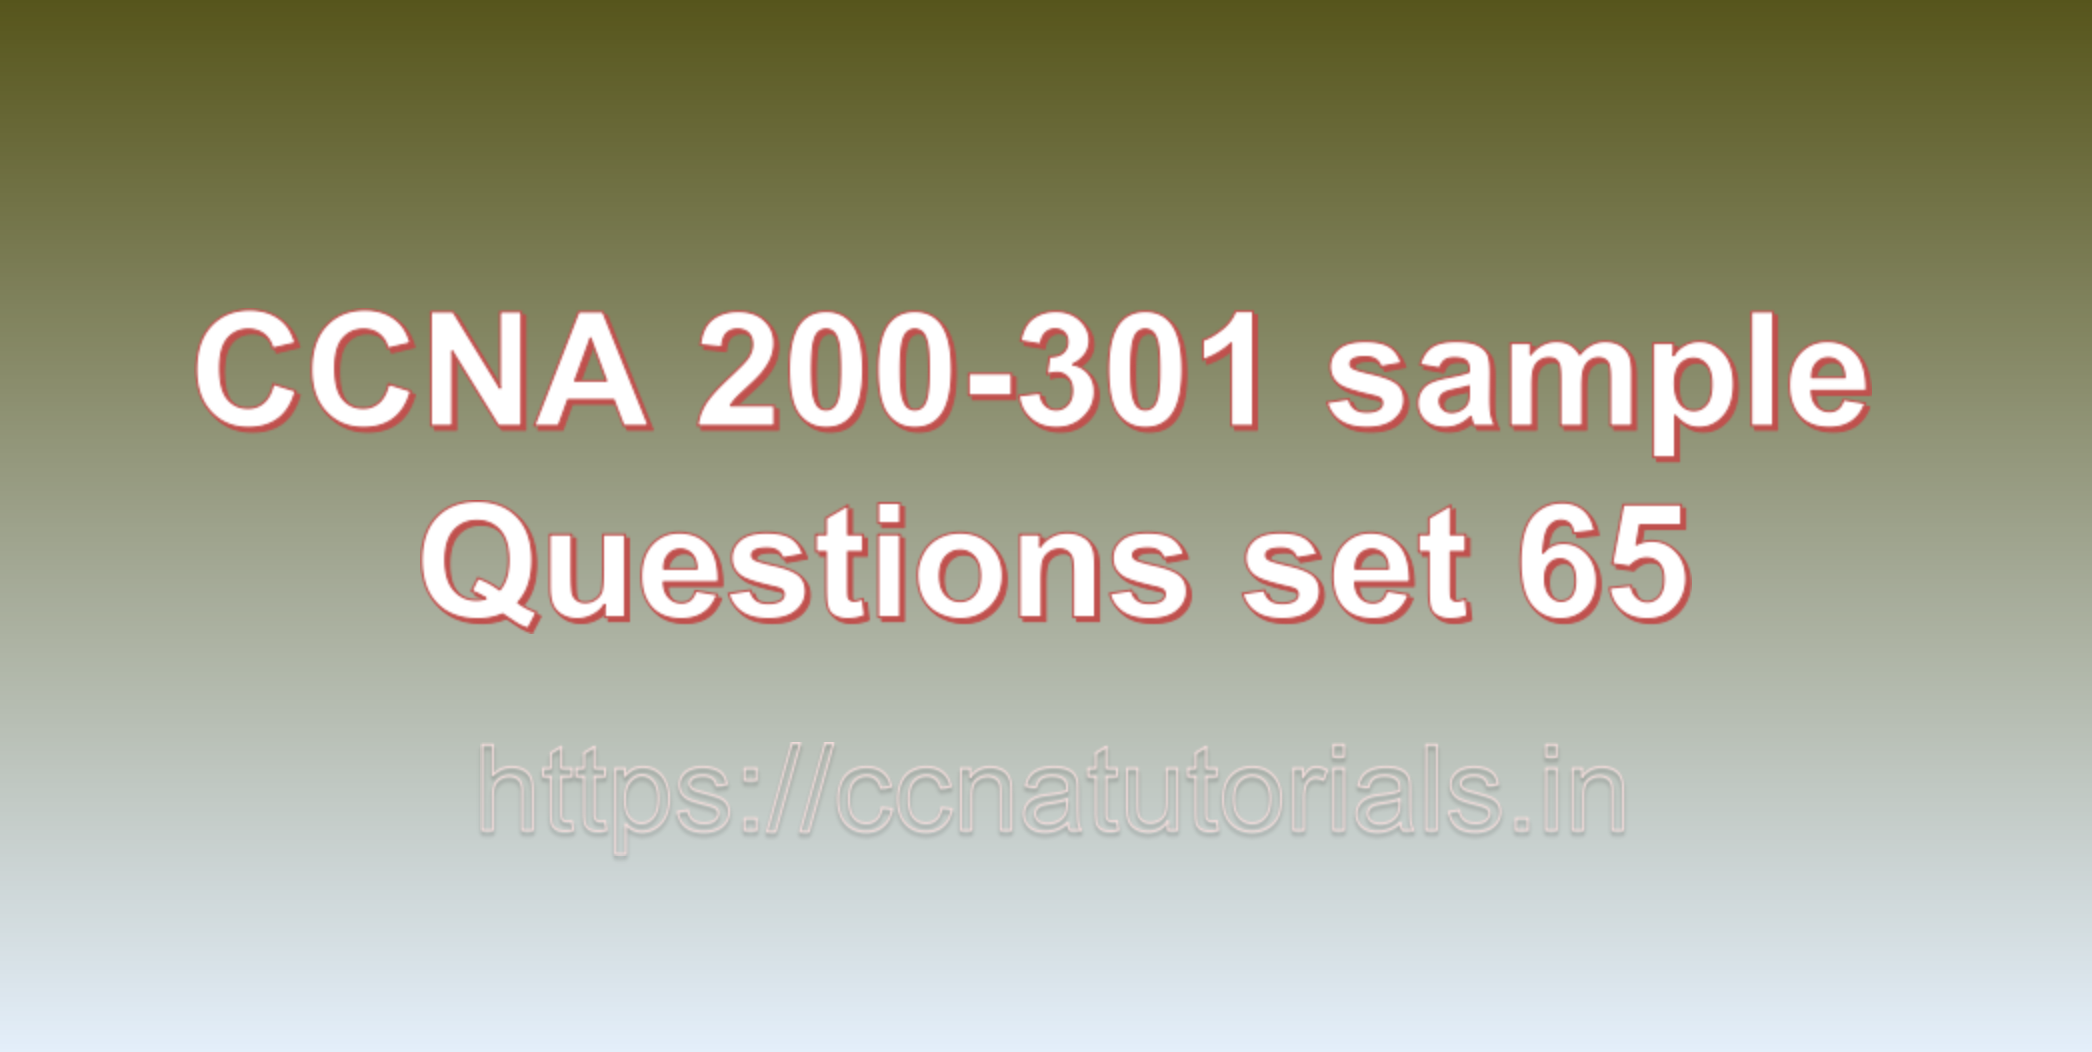 ccna sample questions set 65, ccna tutorials, CCNA Exam, ccna